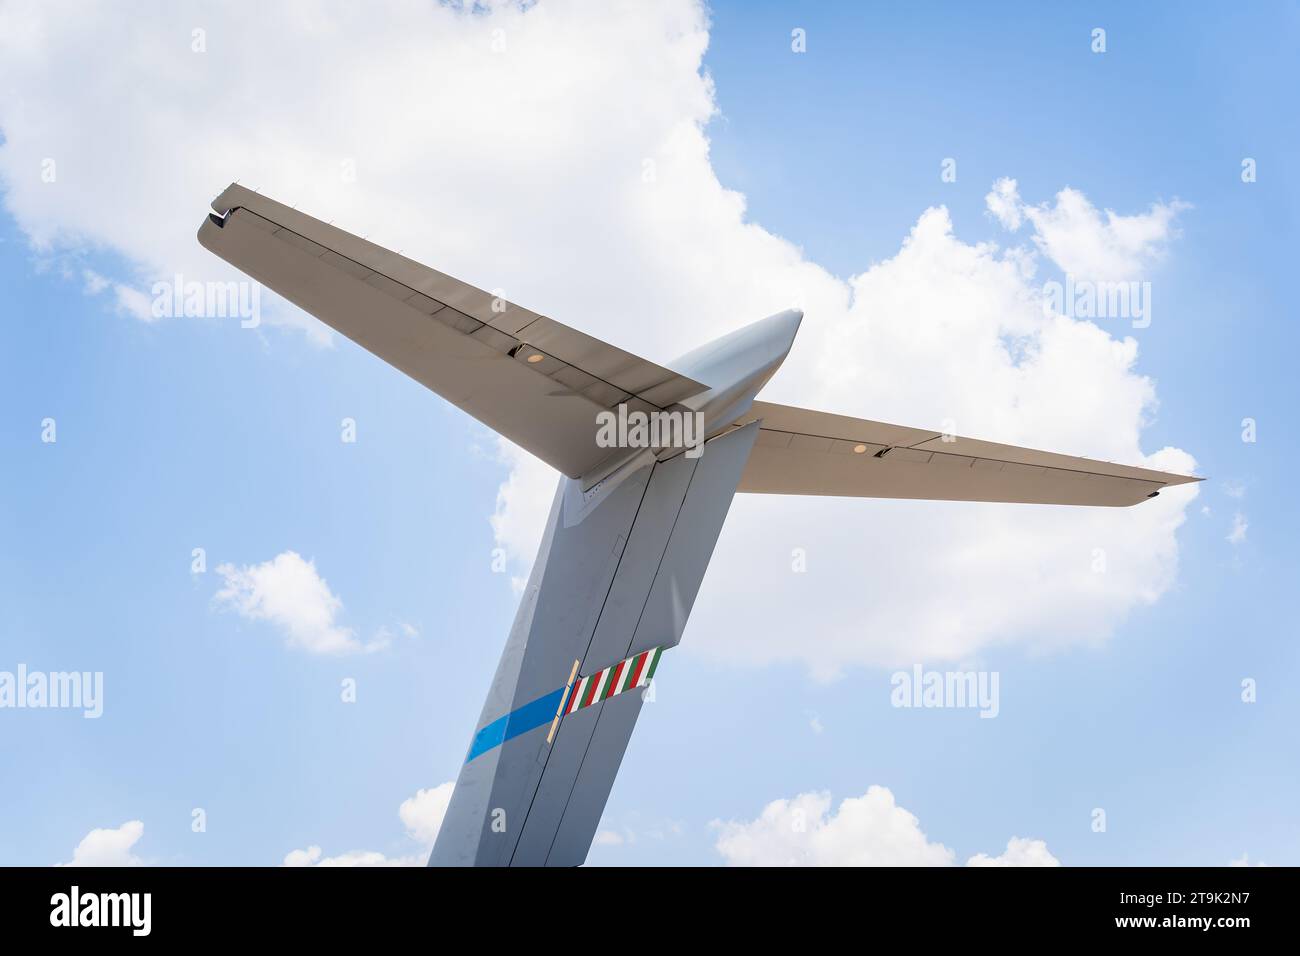 Detailaufnahmen mit den Stabilisatoren, Rudern, Rudern und Aufzügen eines Flugzeugs Stockfoto